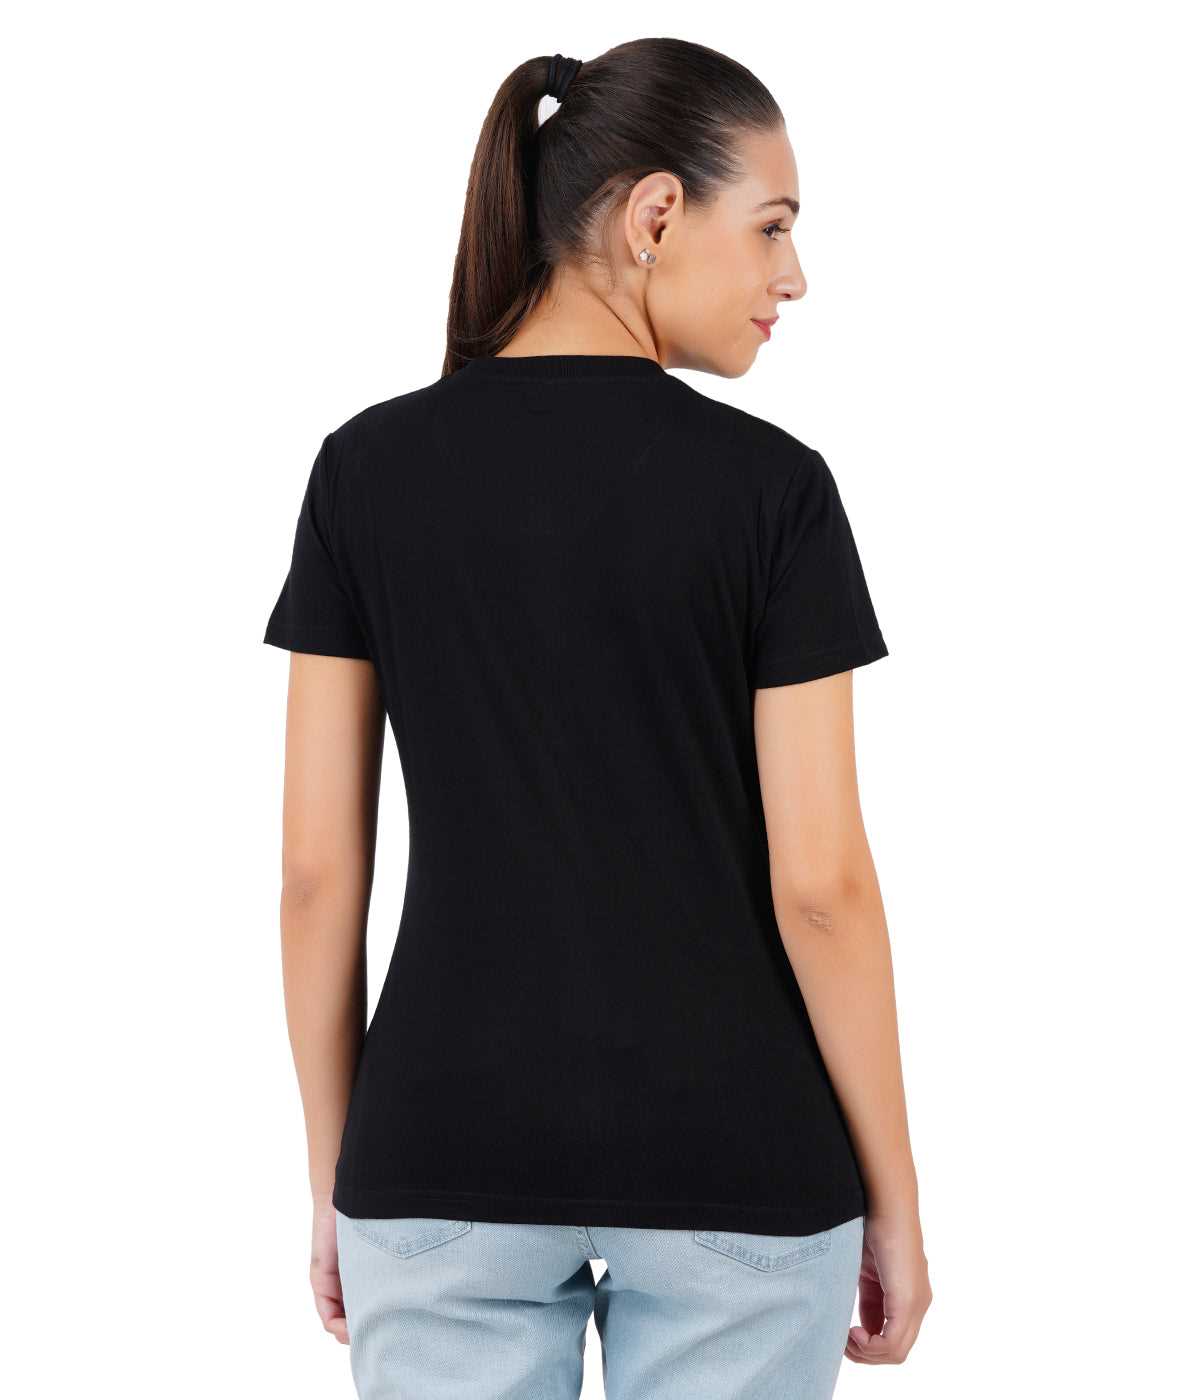 Solid women round neck black t-shirt